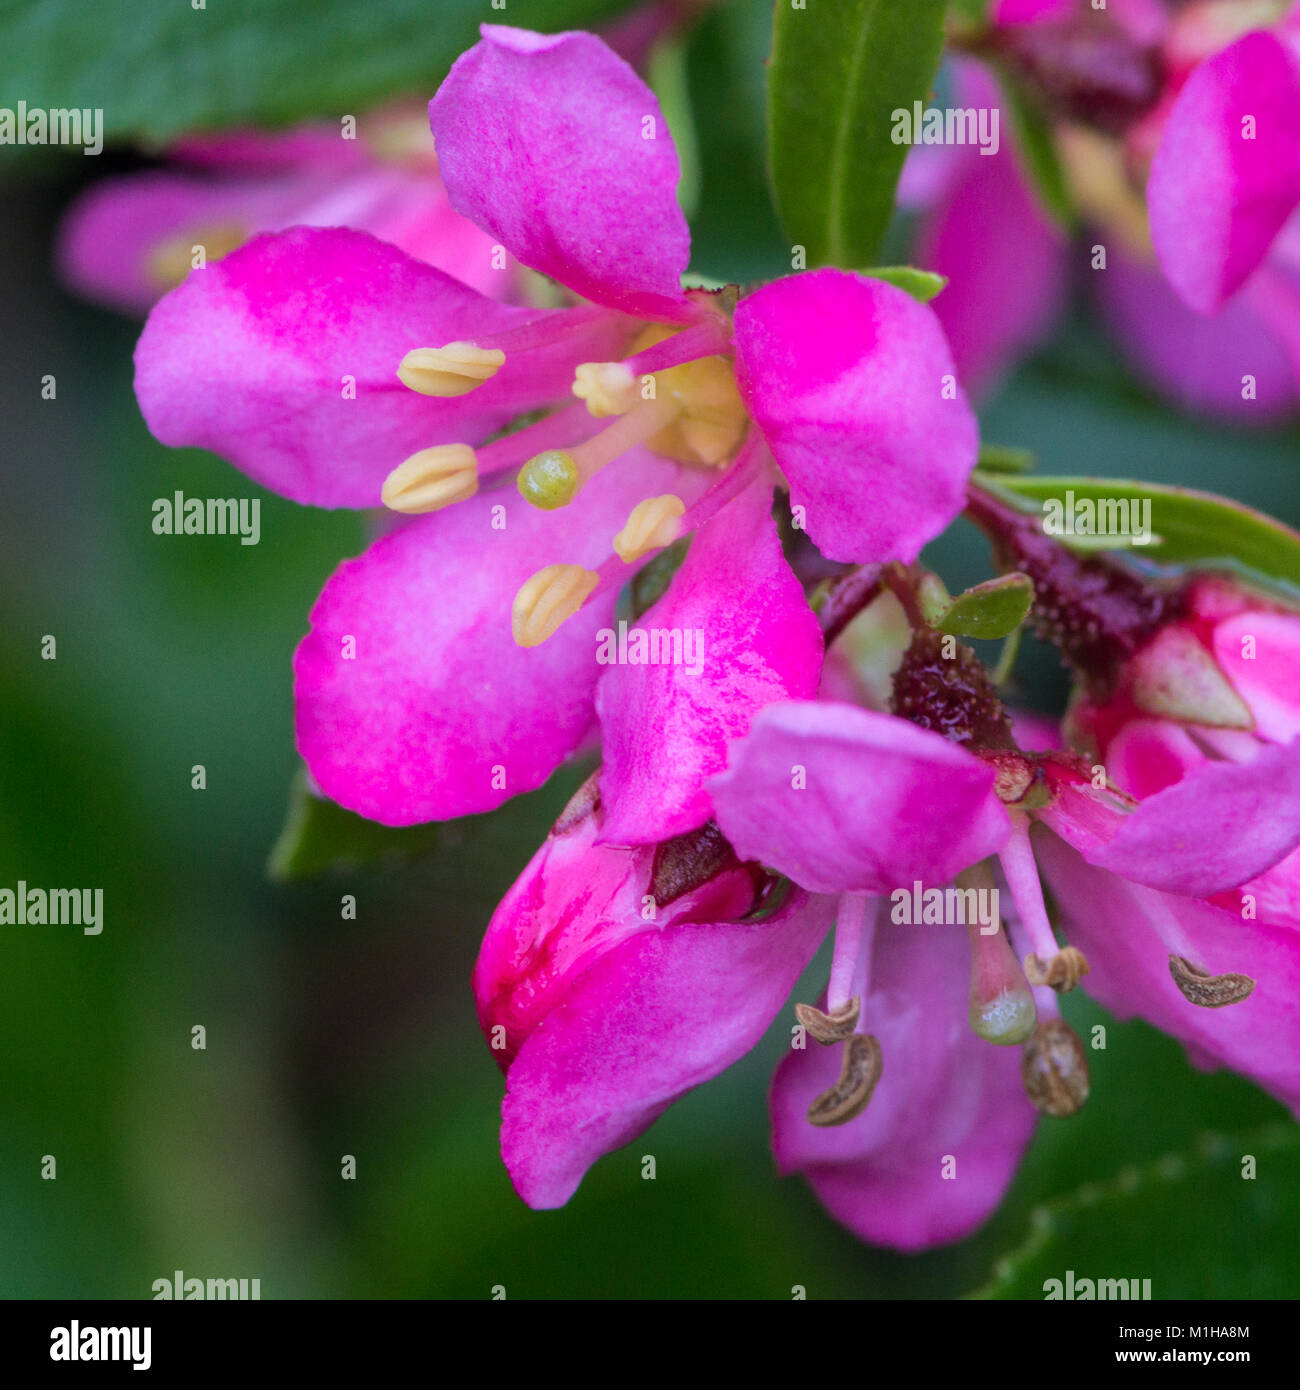 A macro shot of some escallonia blooms. Stock Photo